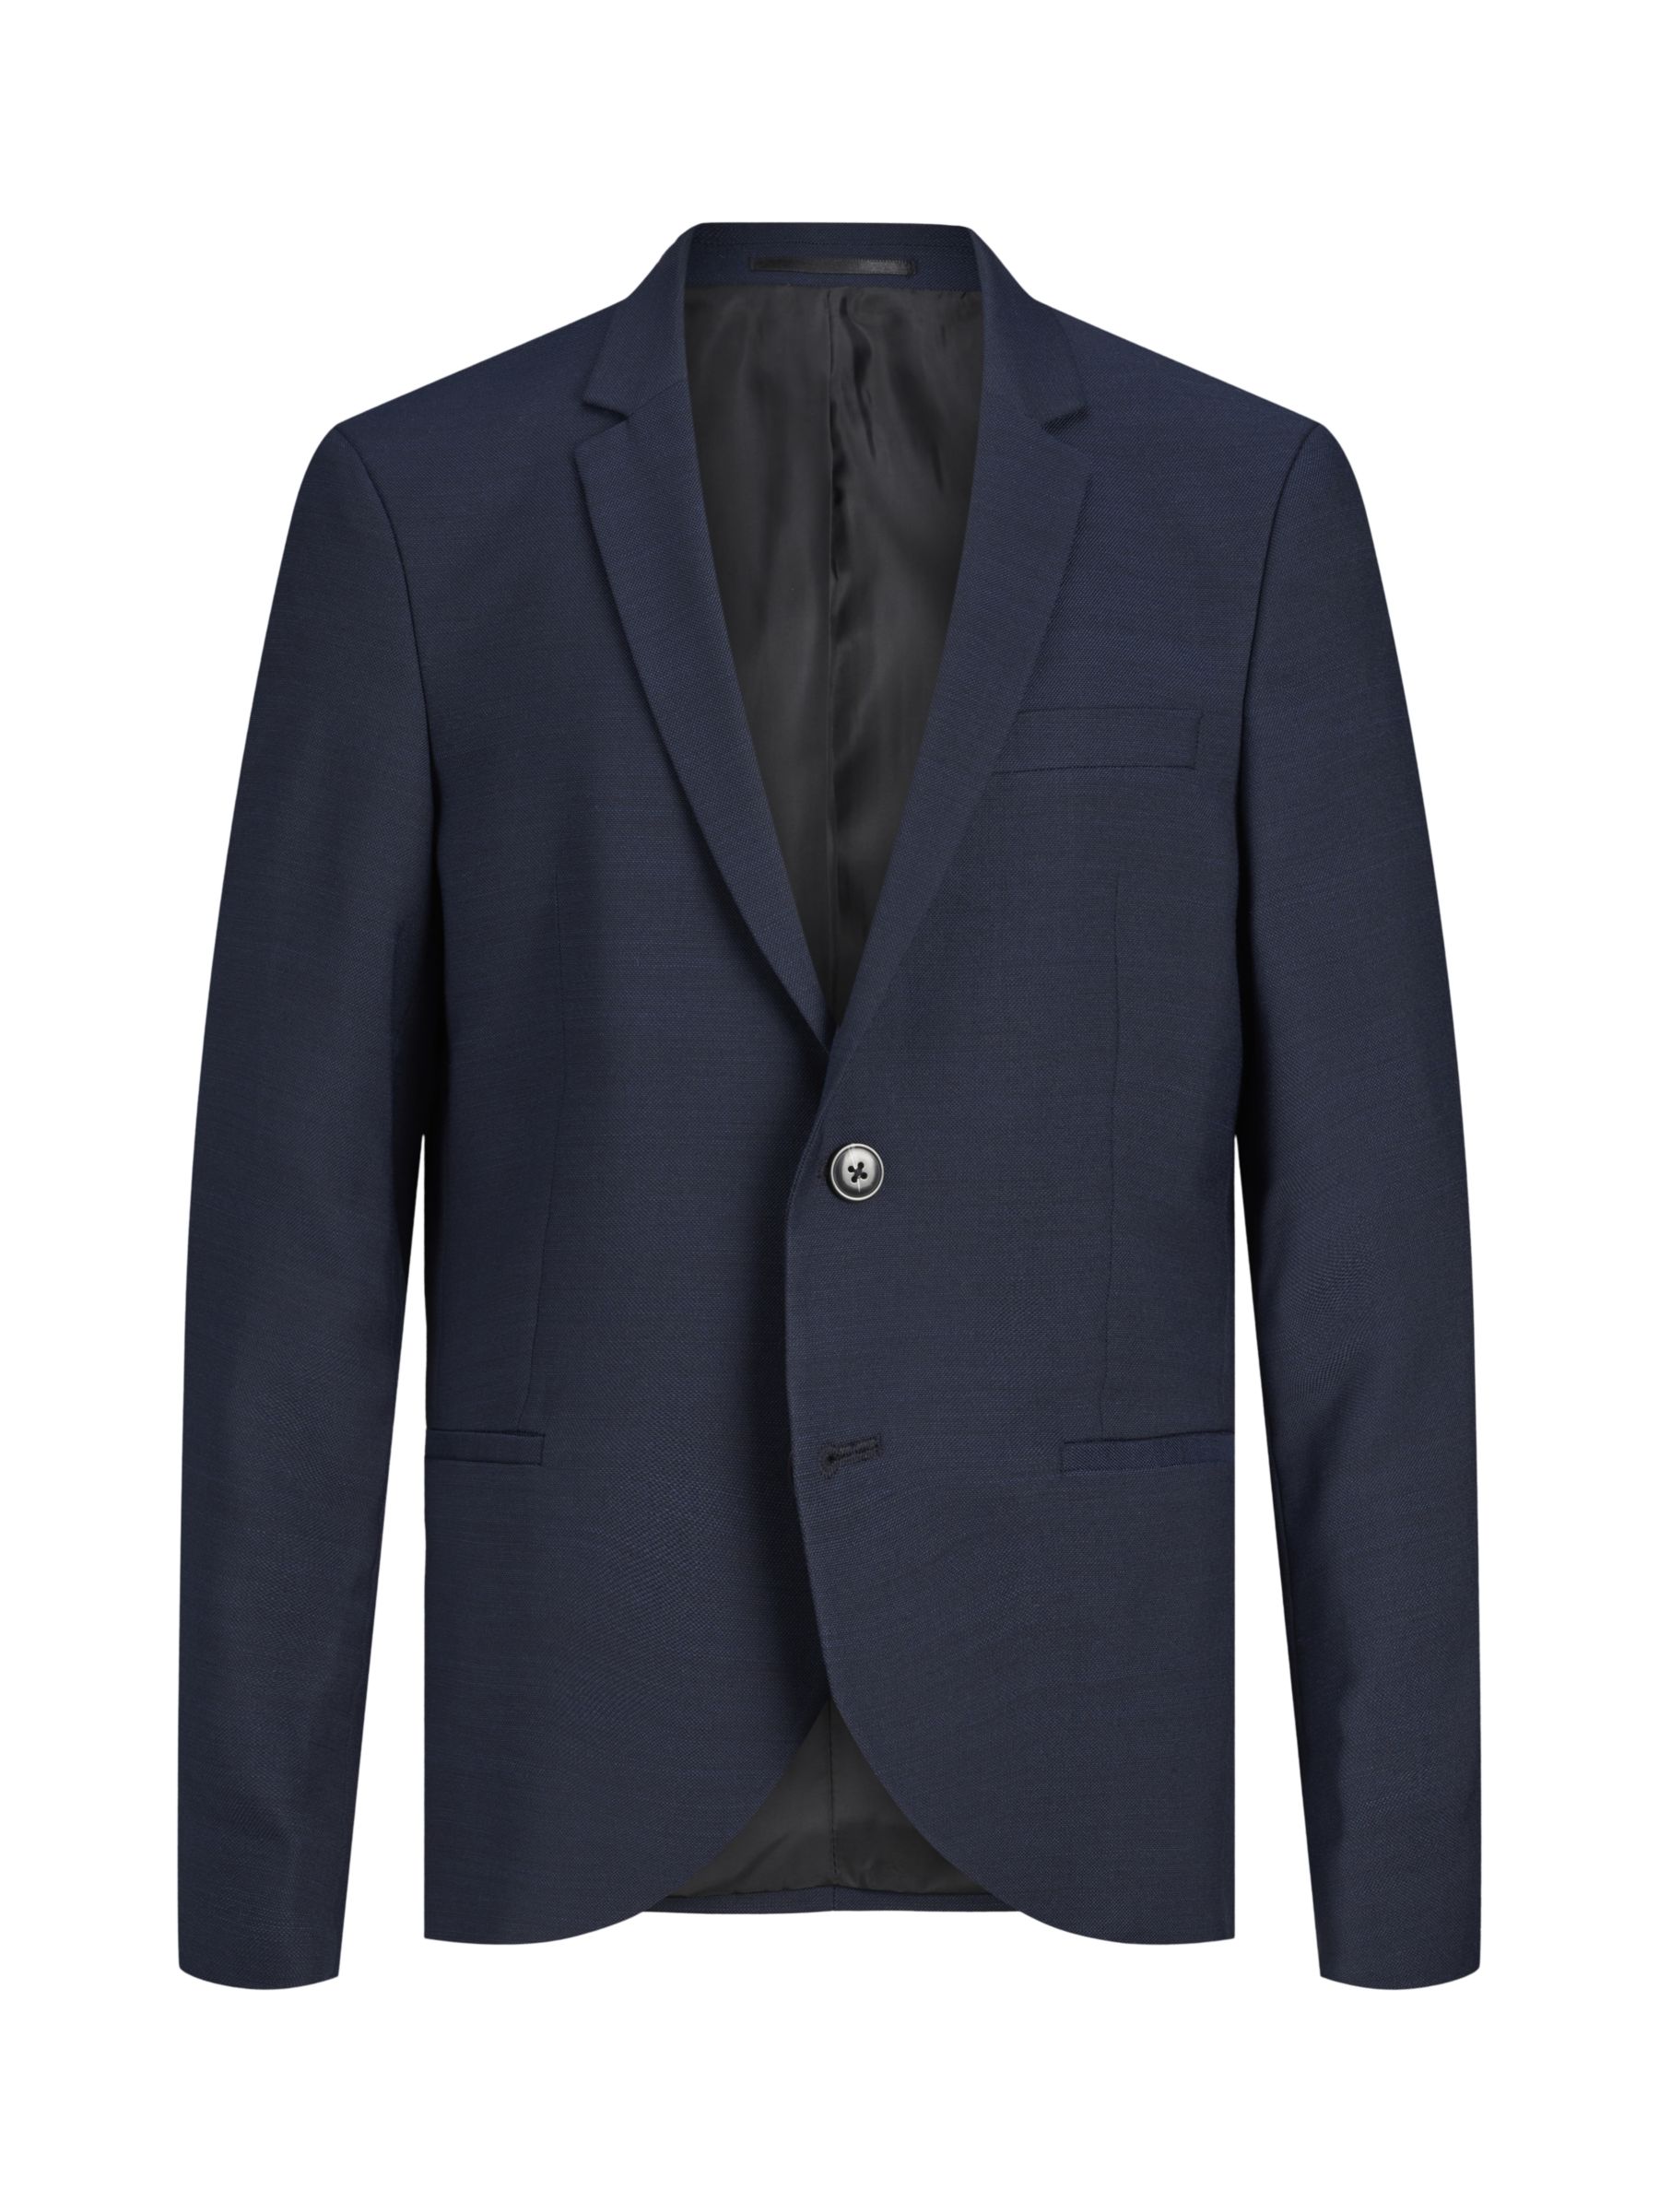 Jack & Jones Junior Suit Blazer, Navy at John Lewis & Partners